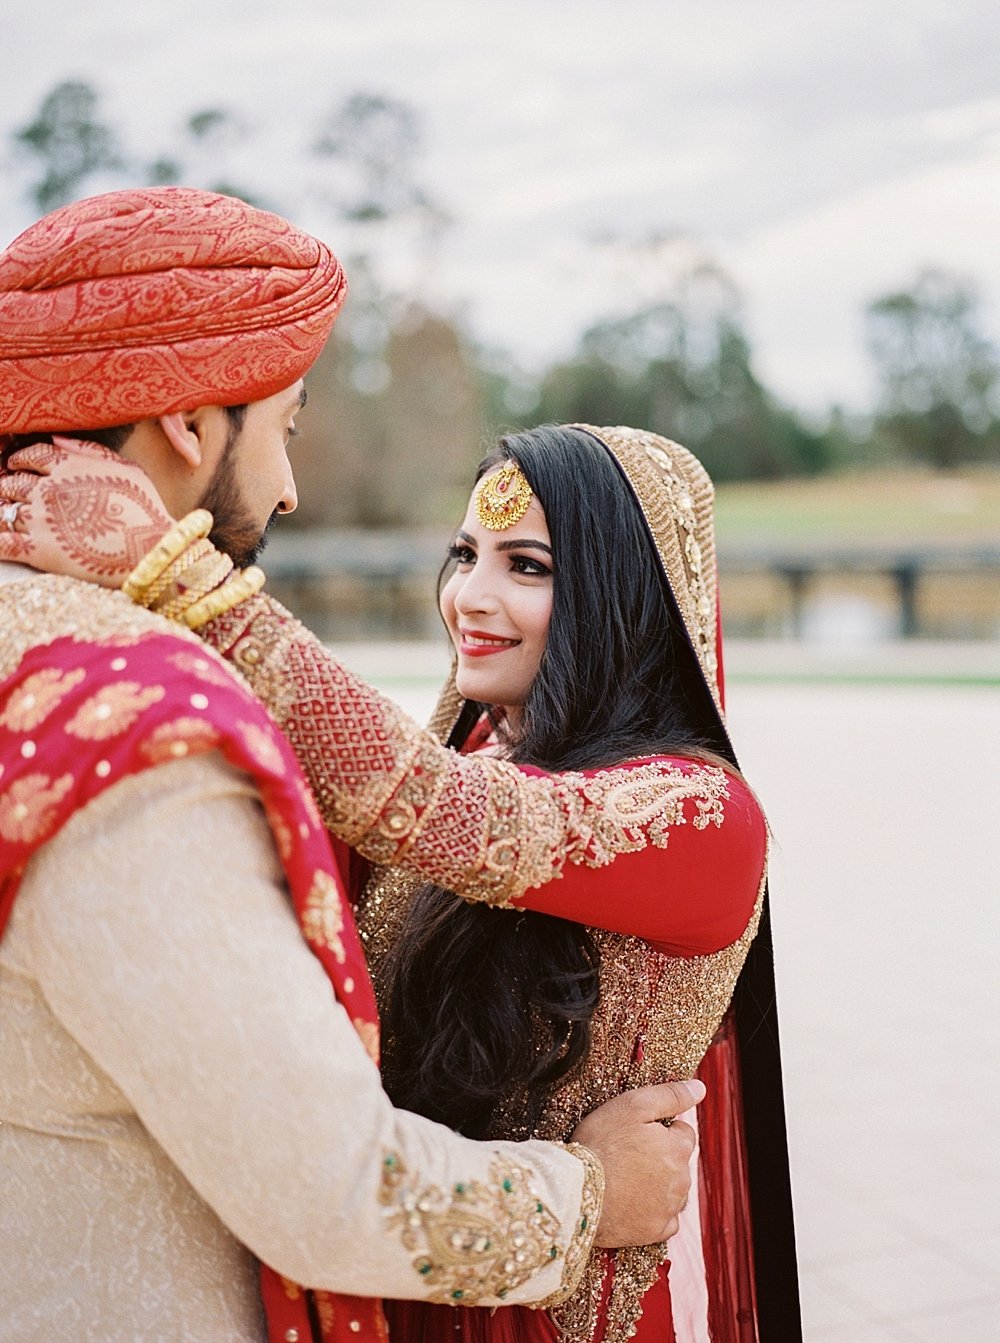 Indian Wedding Hilton Bonnet Creek Waldorf Astoria Orlando FL - Portra 400 - Film Photography | Ashley Holstein Photography #wedding #indianwedding